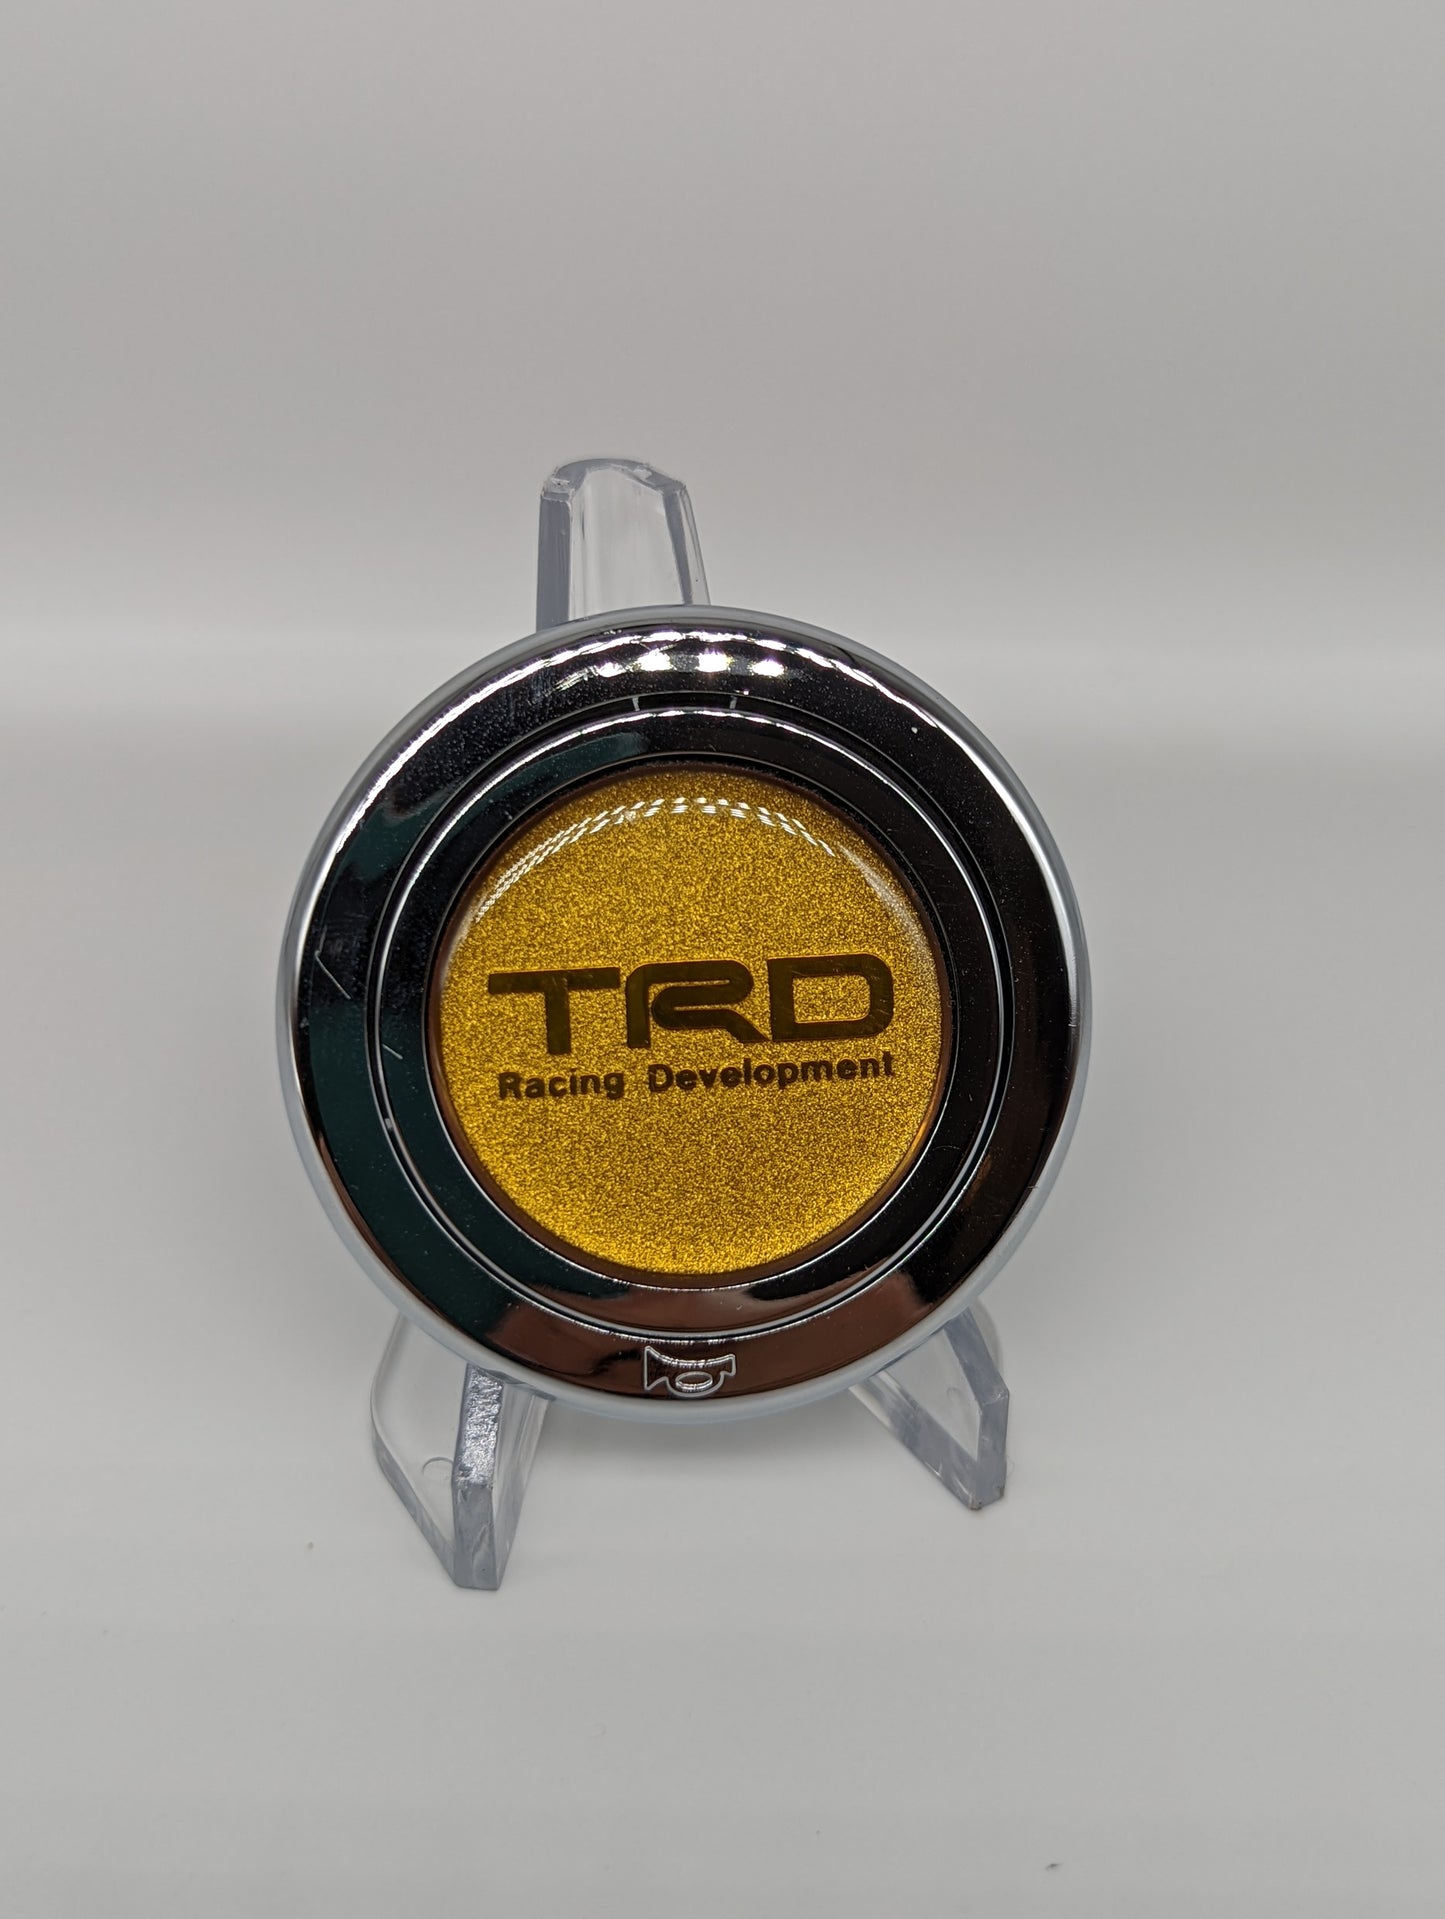 TRD Gold Horn Button